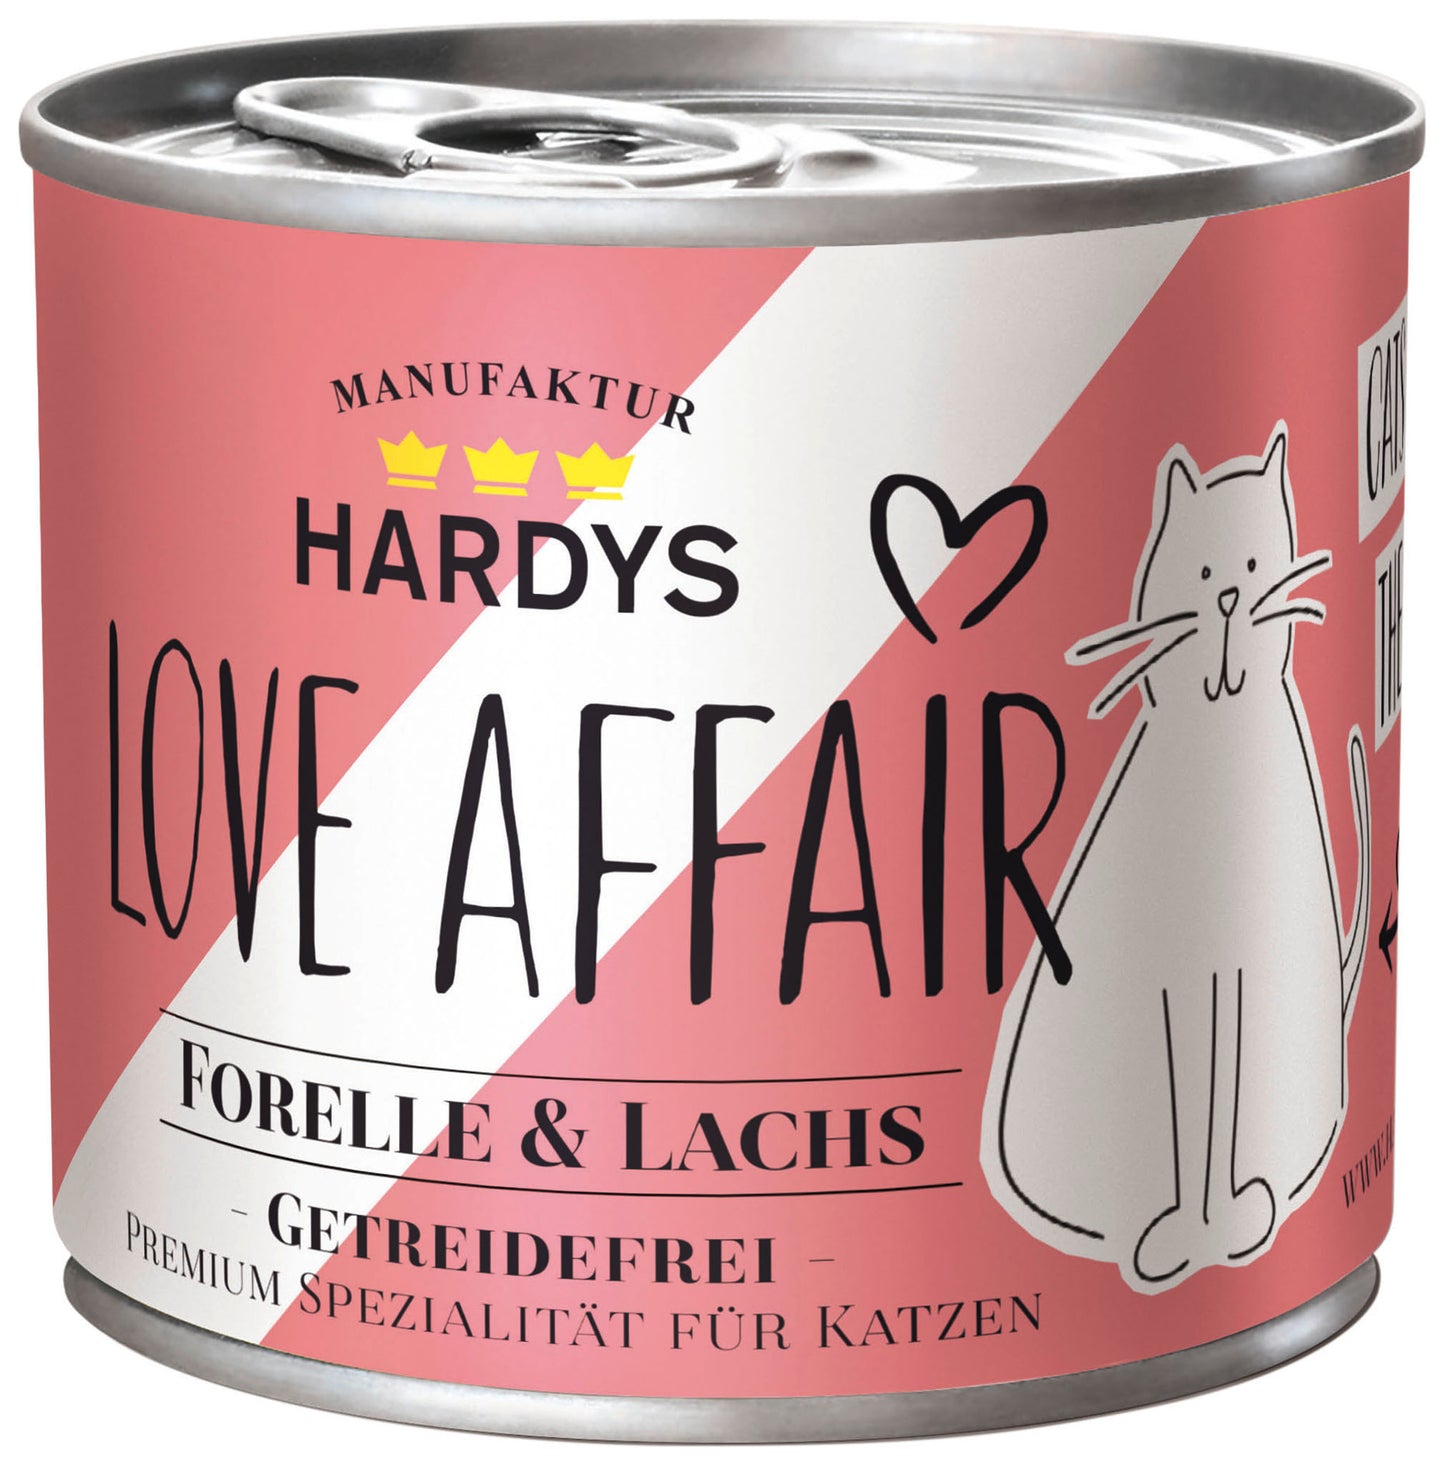 Hardys Love Affair Lachs & Forelle 185g